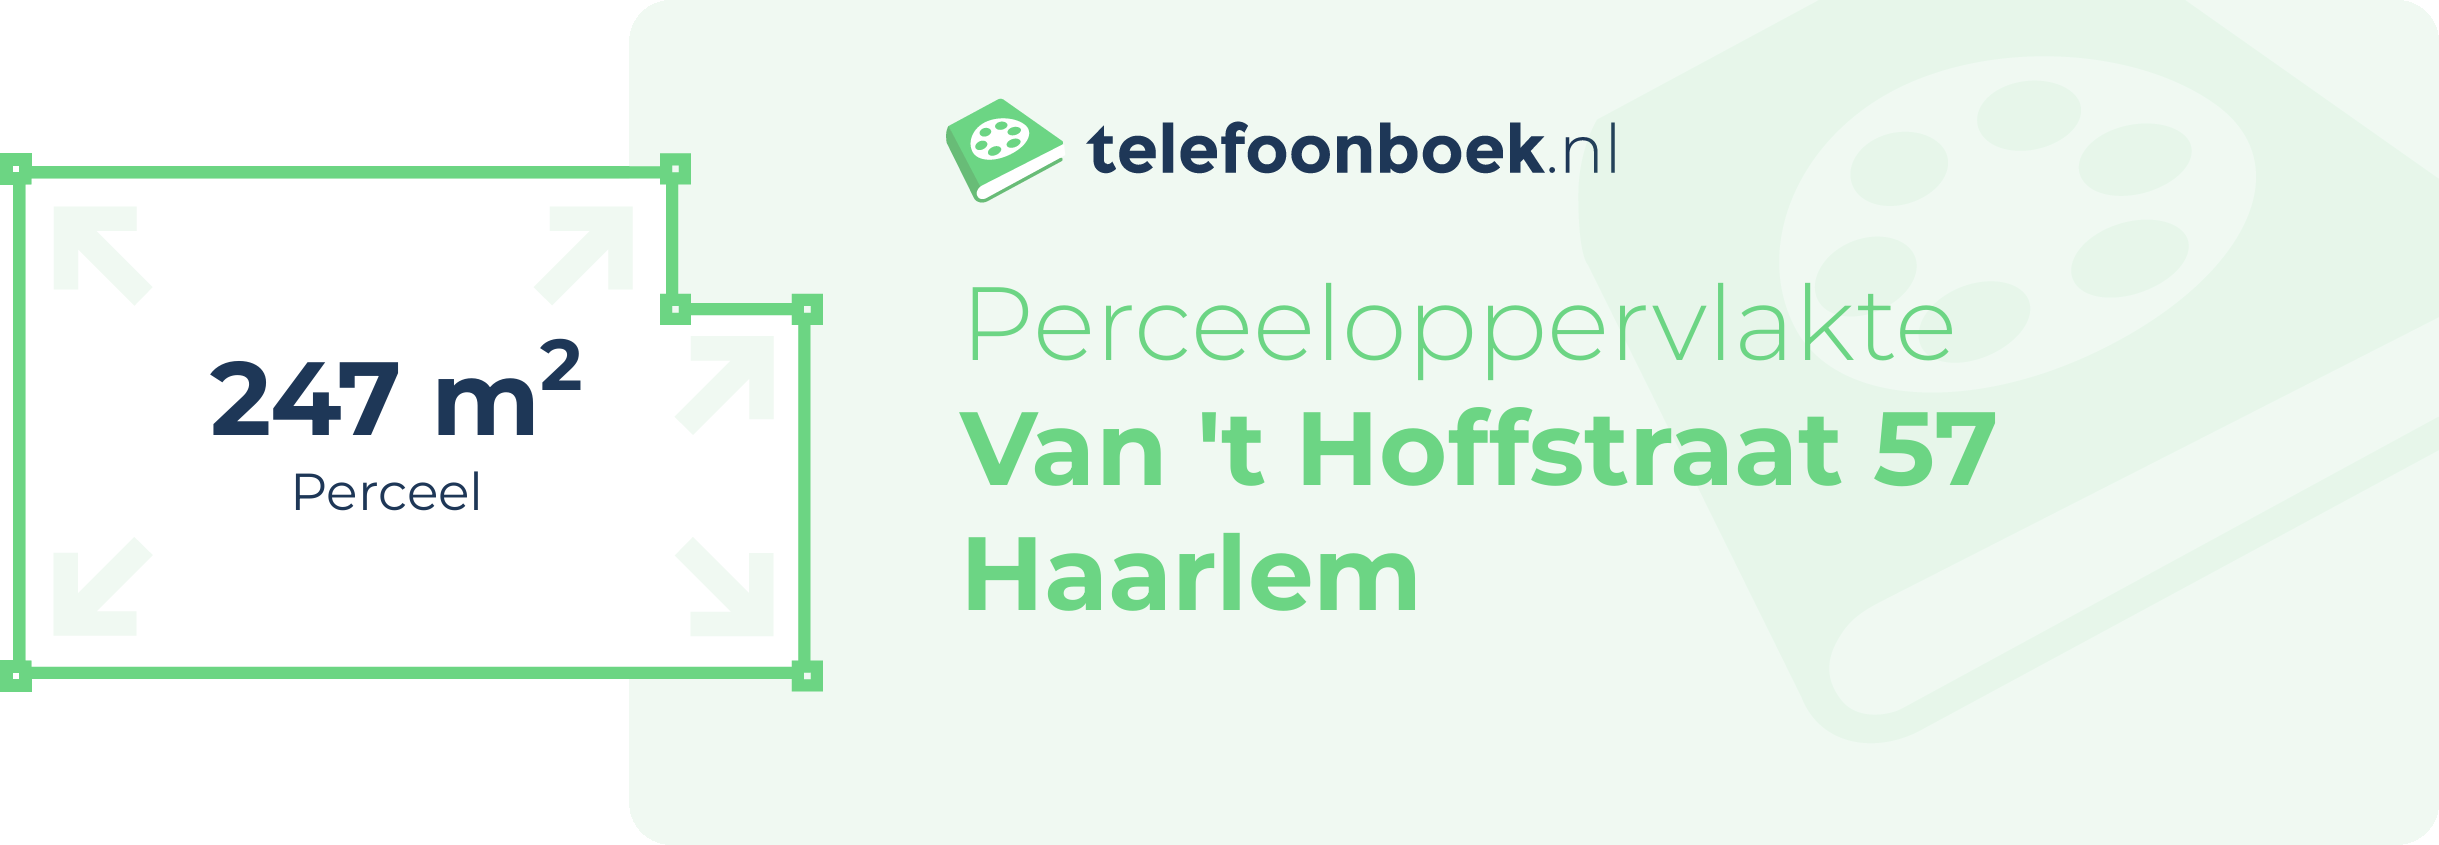 Perceeloppervlakte Van 't Hoffstraat 57 Haarlem